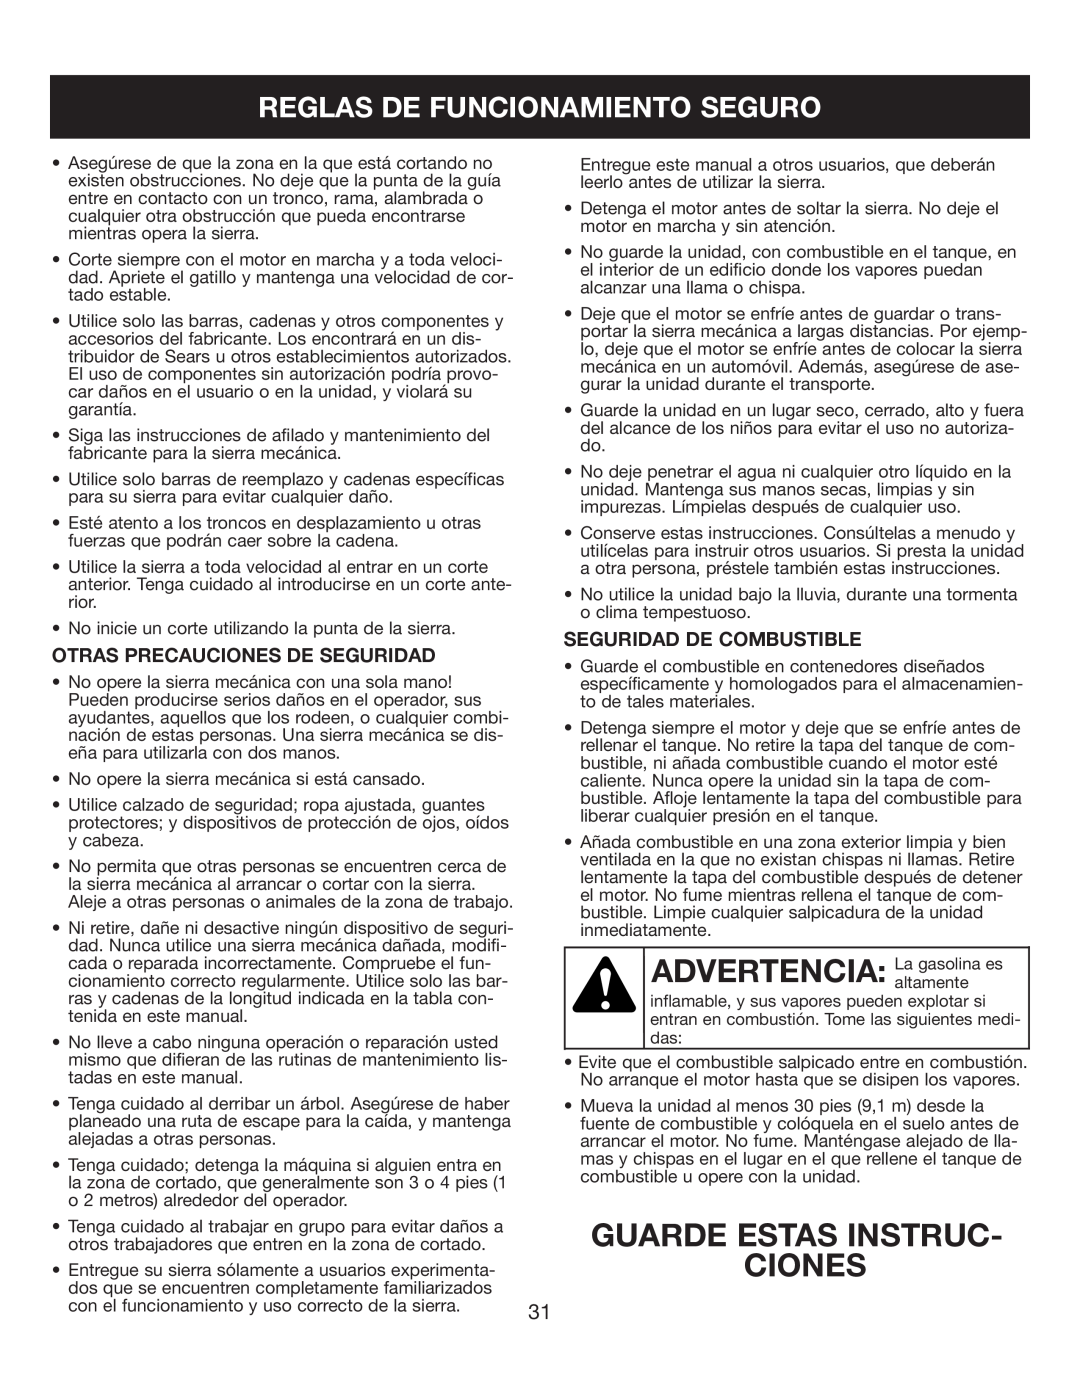 Sears 316.35084 manual Guarde Estas Instruc Ciones, Reglas De Funcionamiento Seguro, Otras Precauciones De Seguridad 